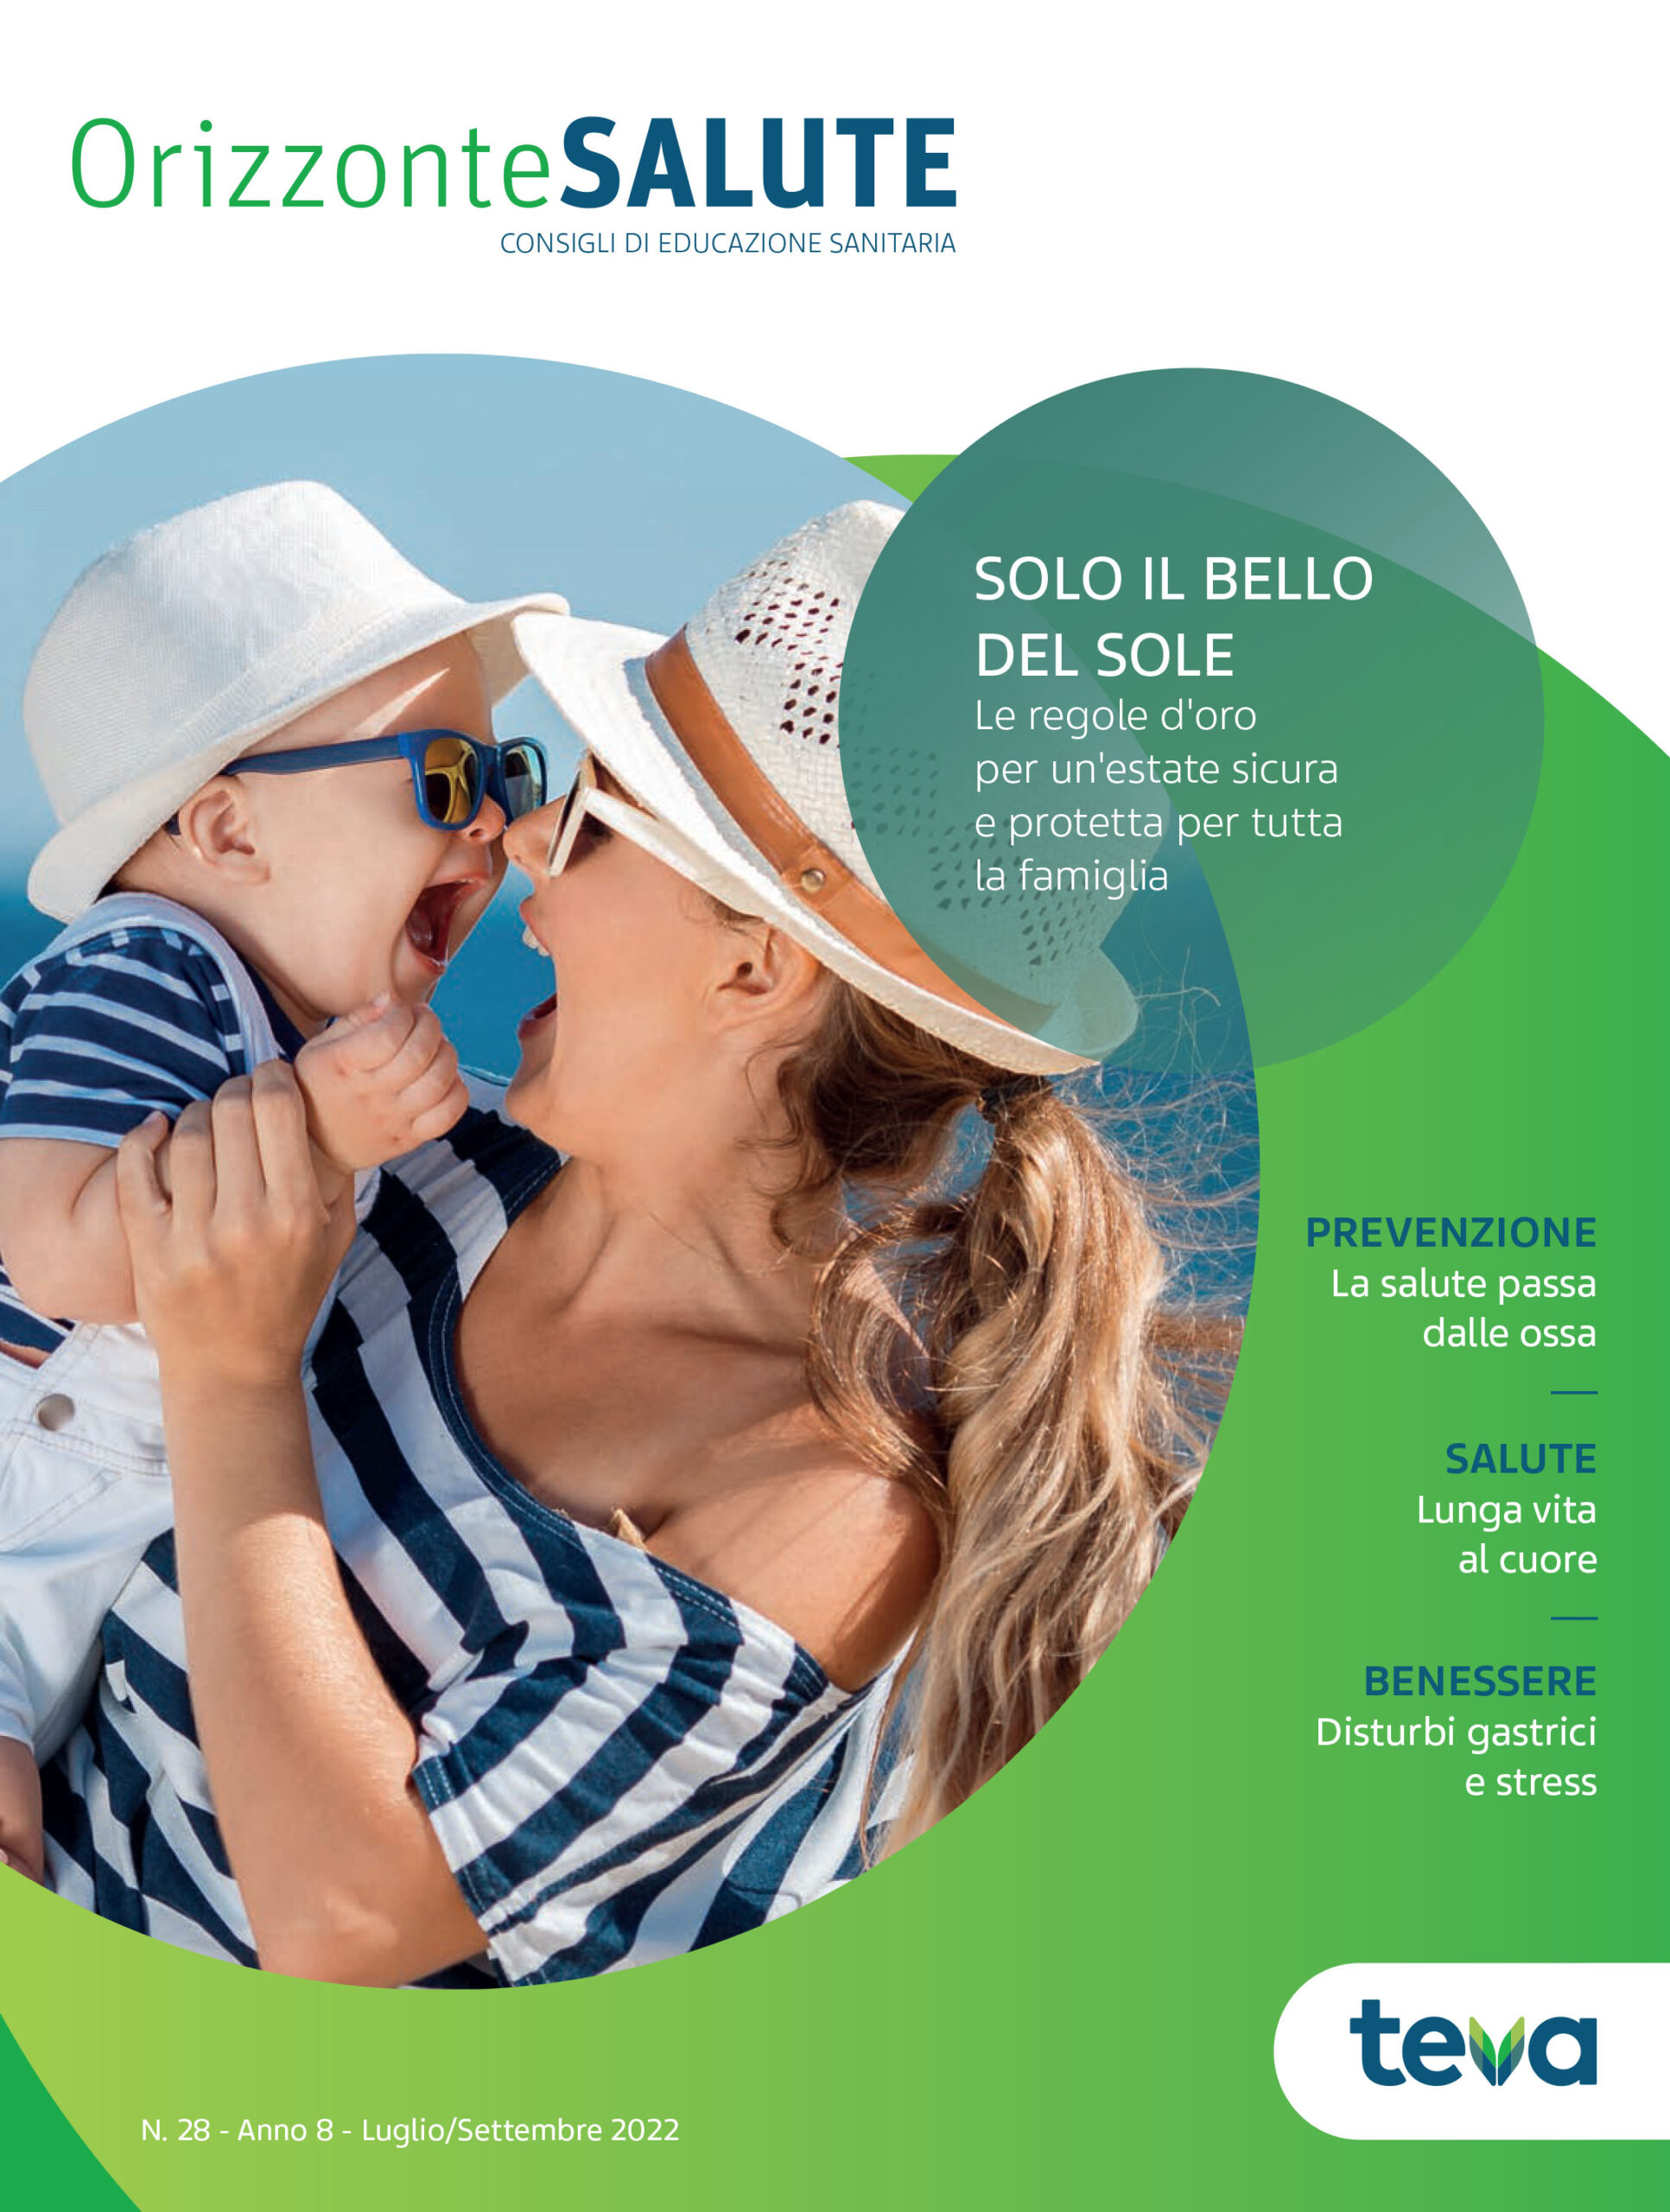 ORIZZONTE SALUTE è la rivista trimestrale di educazione sanitaria promossa da Teva Italia.